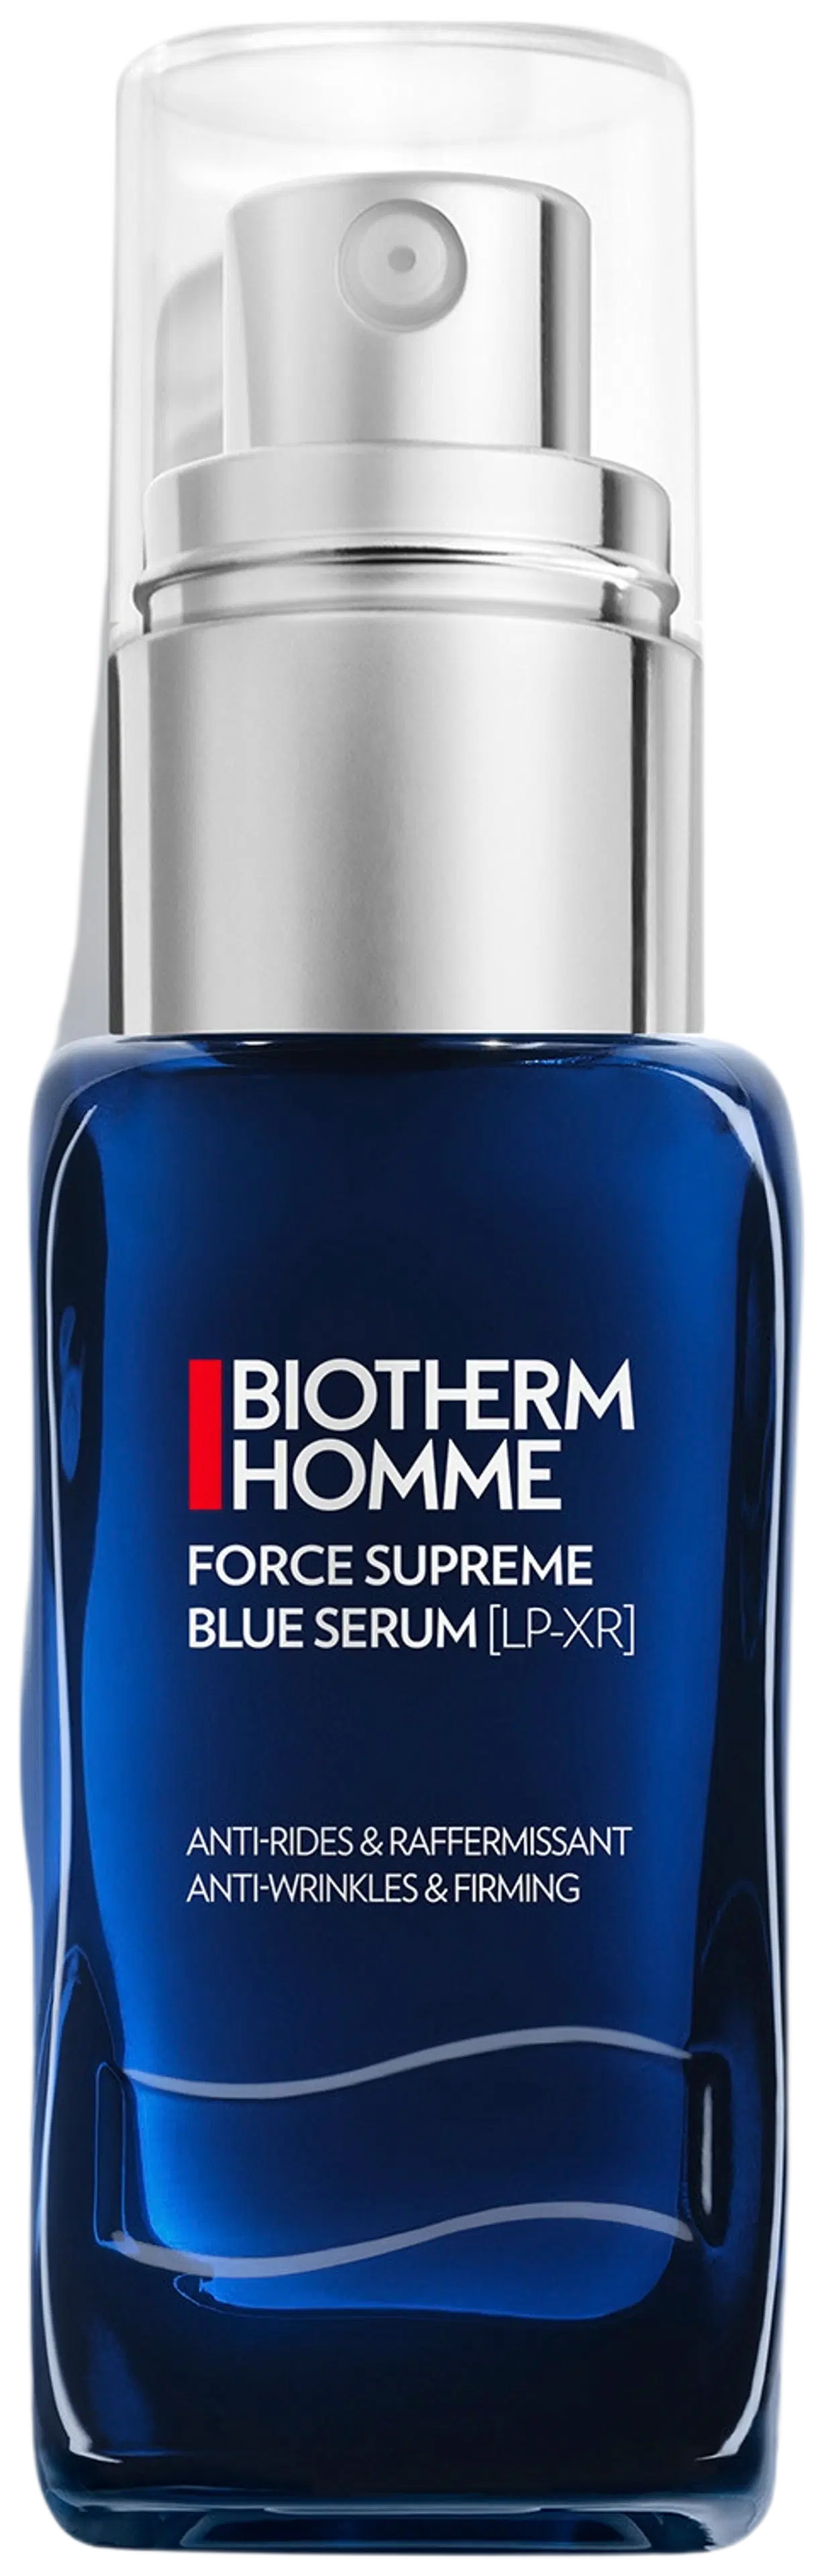 Biotherm Homme Force Supreme Blue Serum kasvoseerumi 30 ml